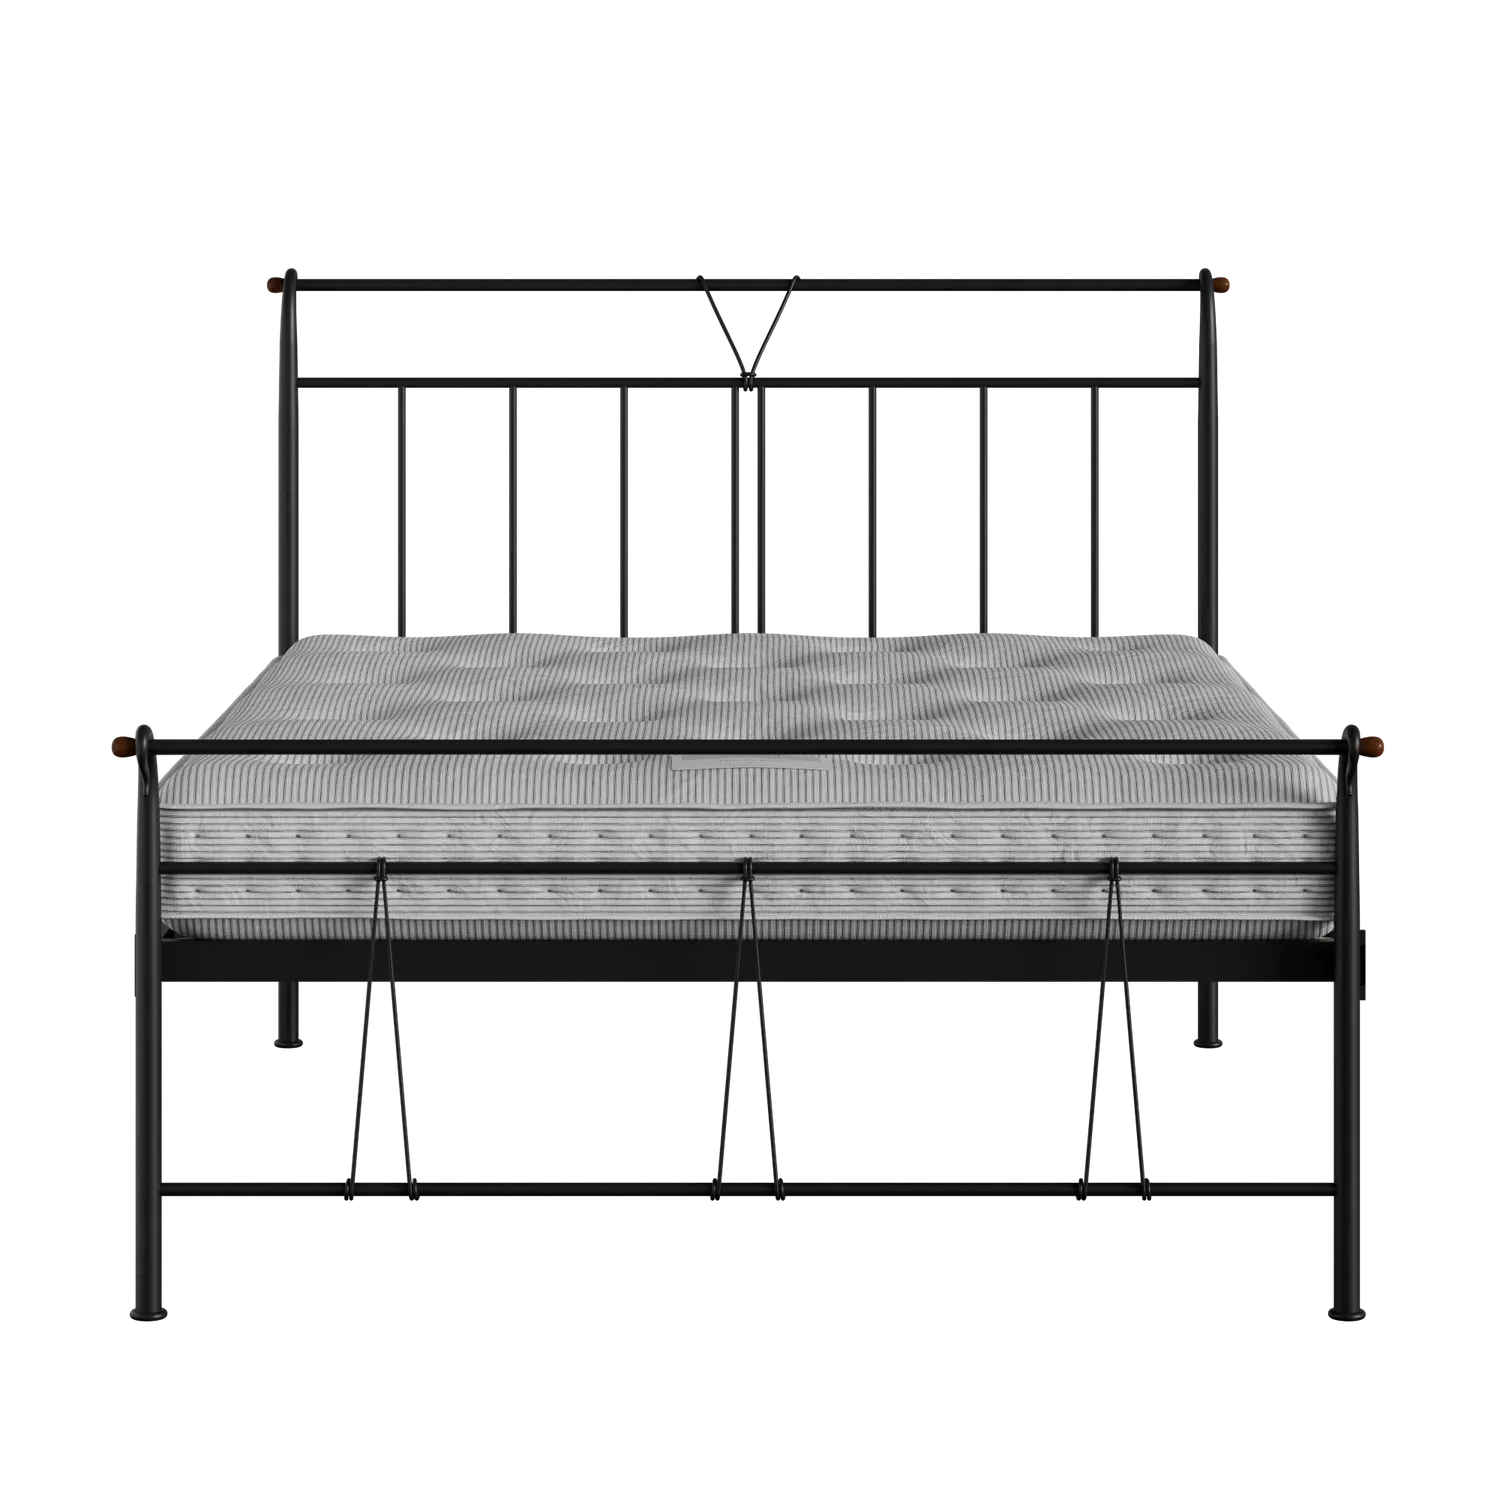 Pellini cama de metal en negro con colchón